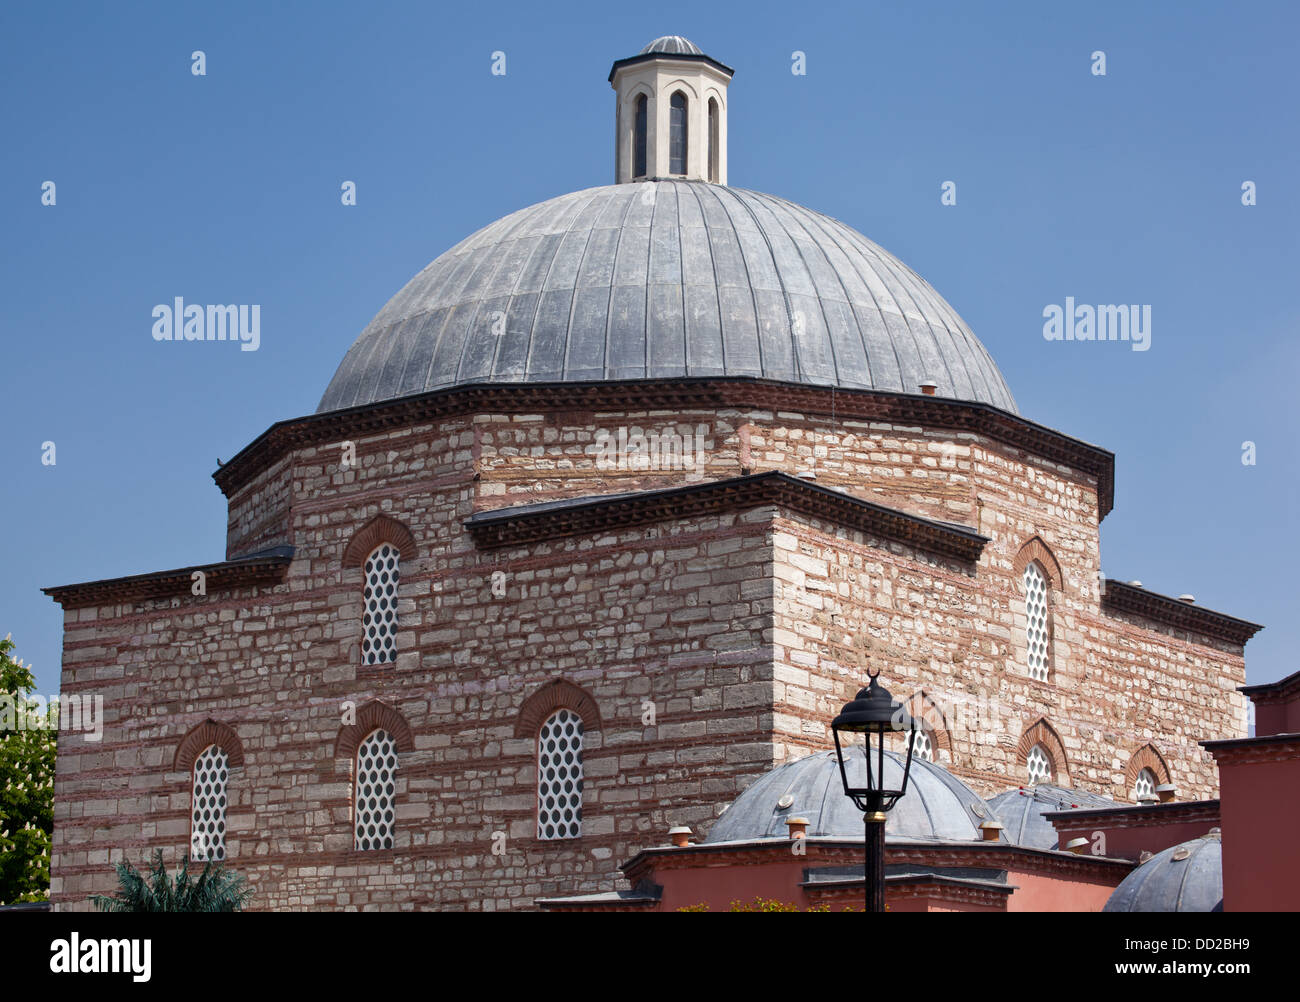 Il tetto a cupola di Haseki Hurrem Sultan Hamamı hamam Turco ad Istanbul in Turchia. Foto Stock